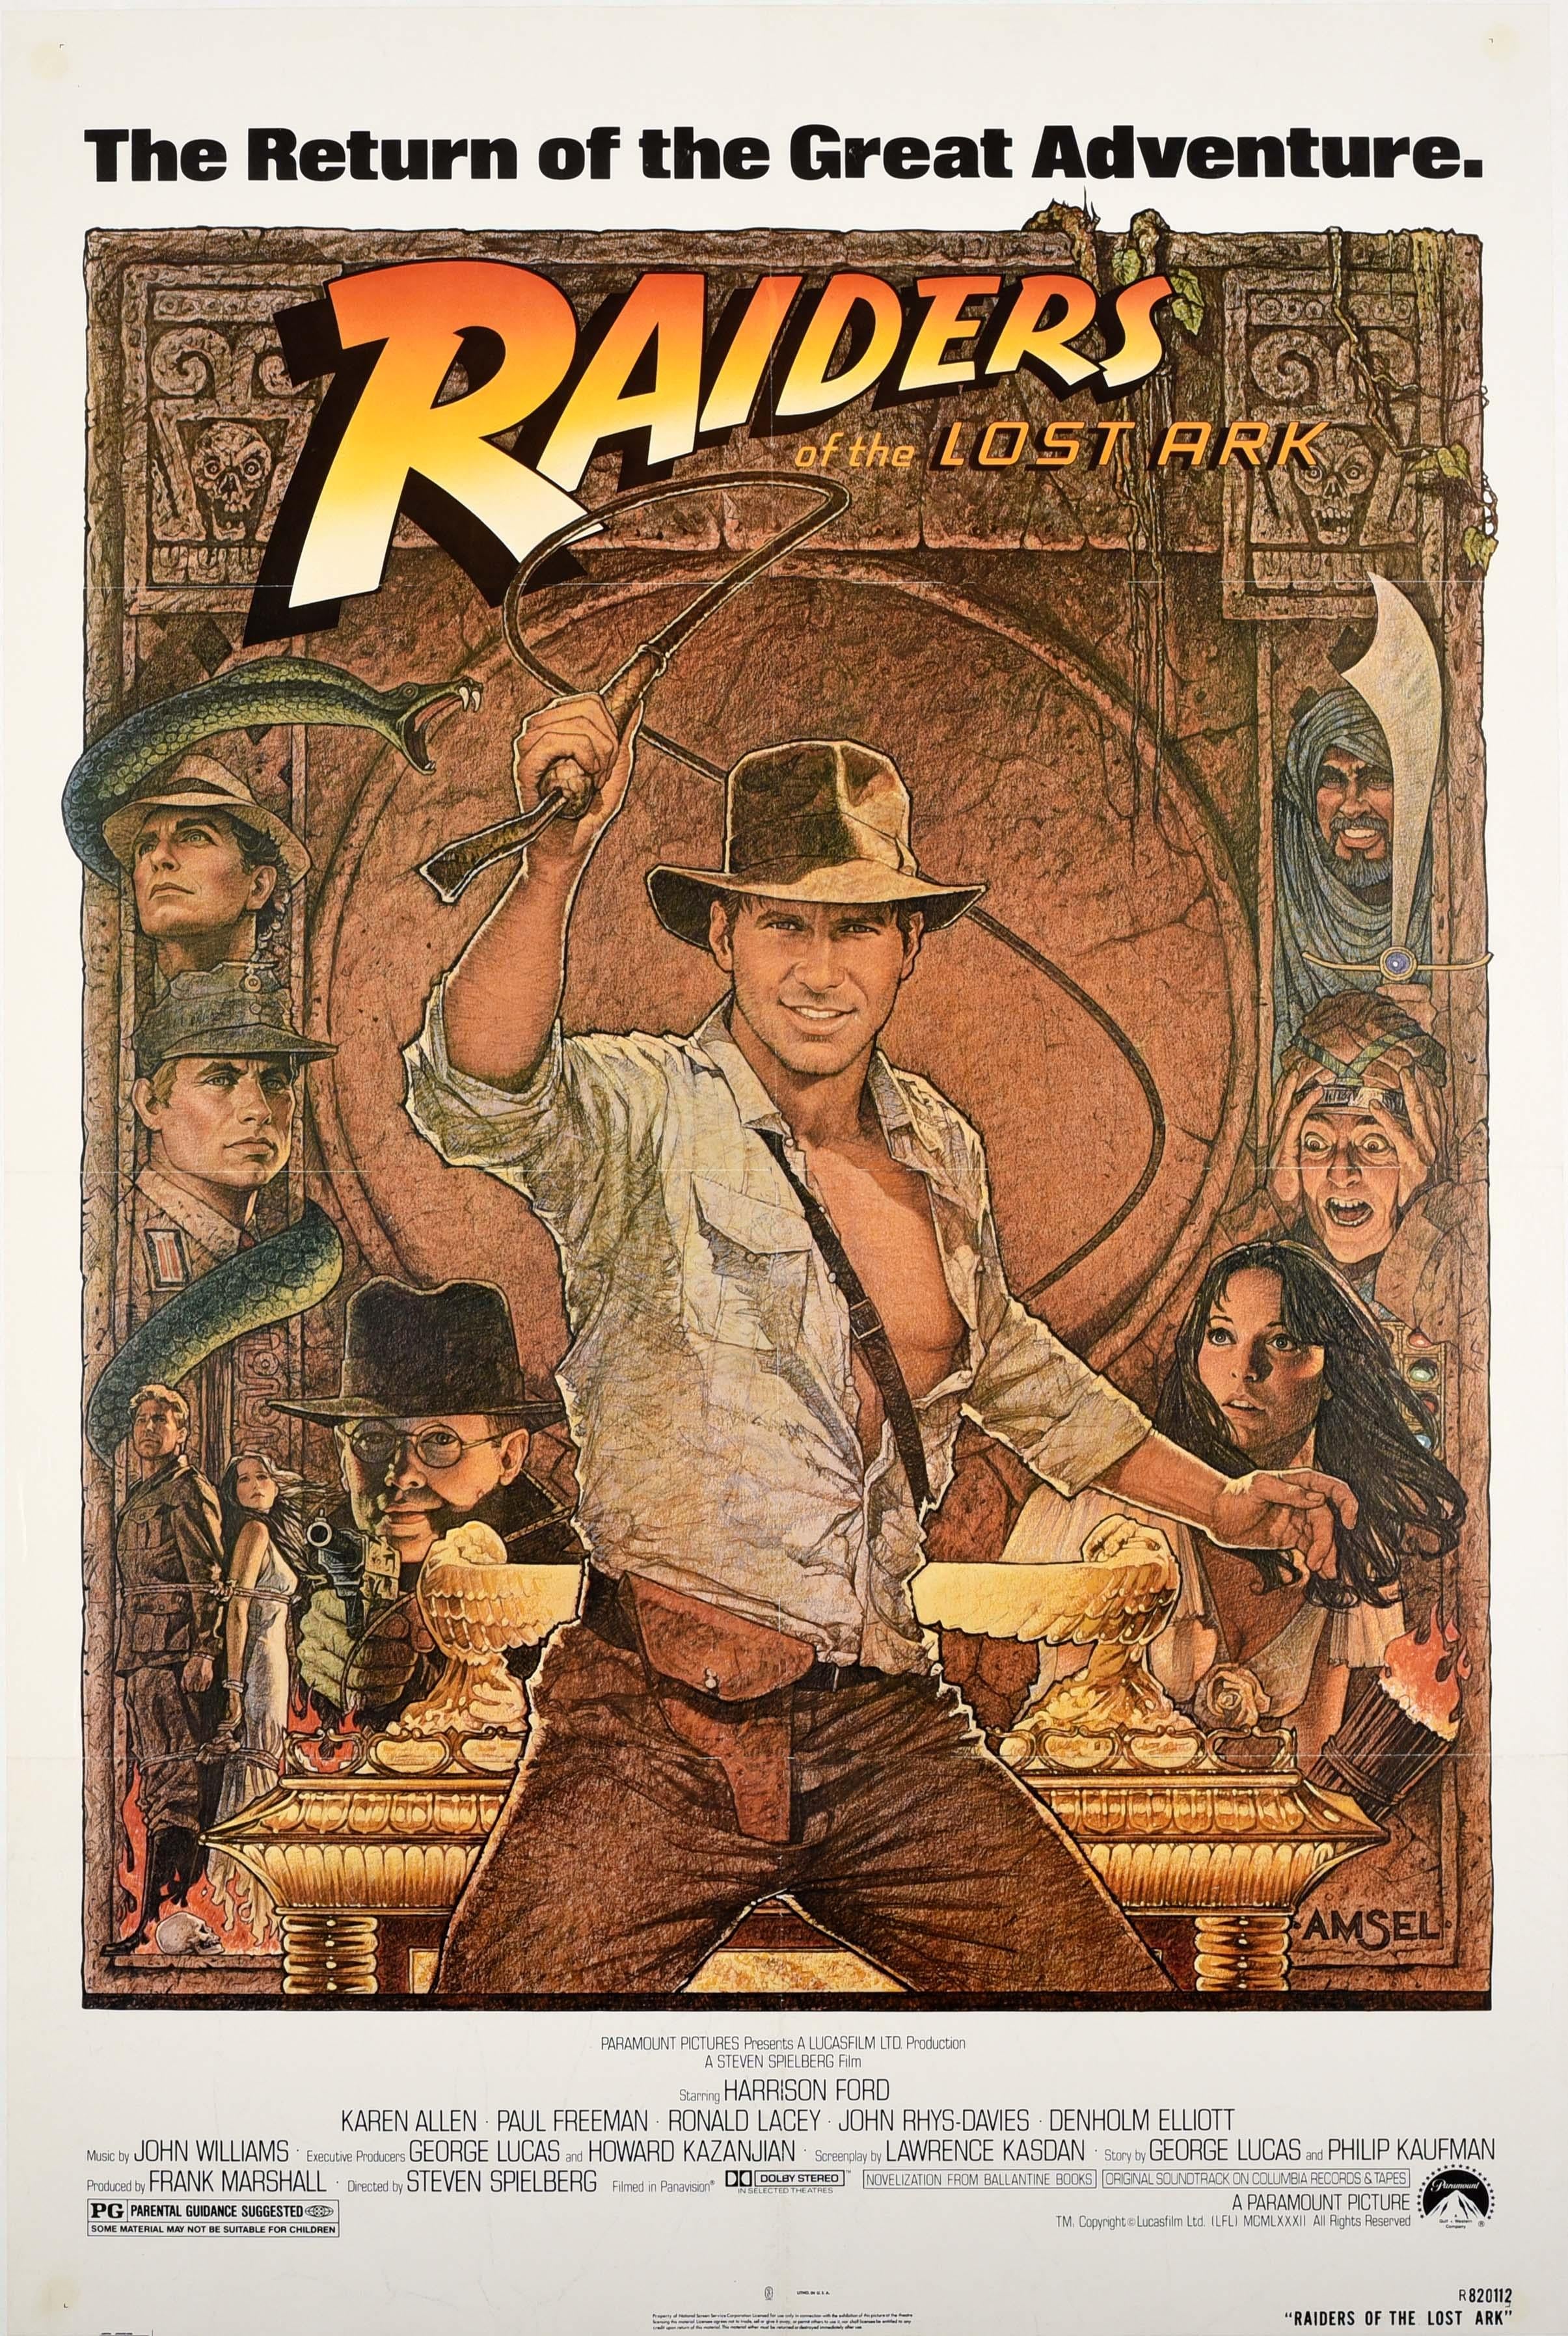 Richard Amsel Print - Original Vintage Movie Poster Indiana Jones Raiders Of The Lost Ark Adventure